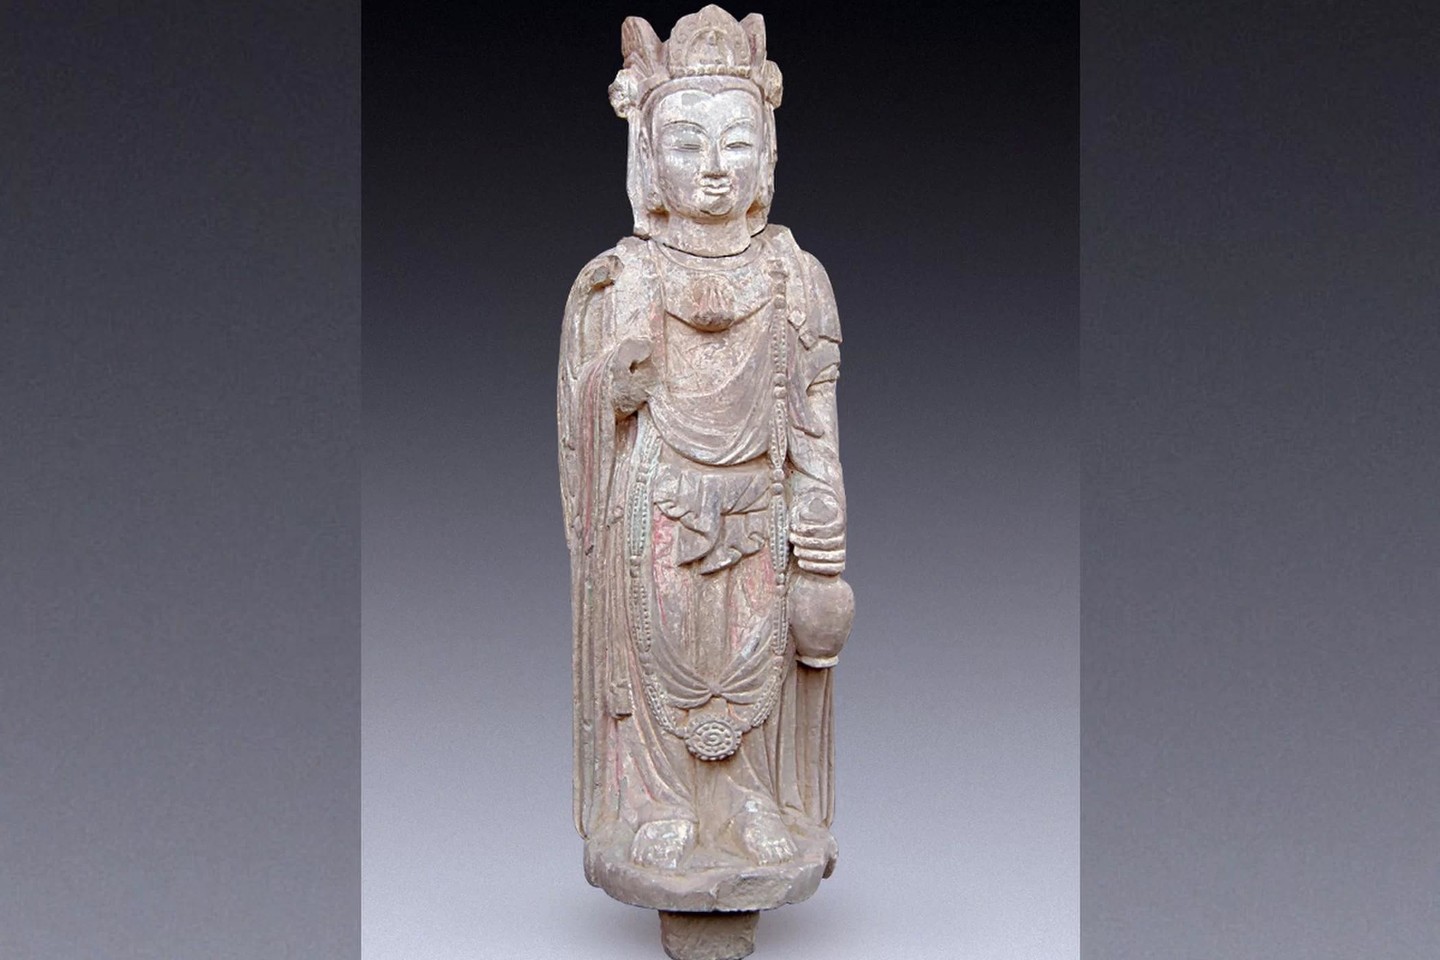  Šalia palaikų rastos statulos buvo sukurtos kažkada tarp Wei (386-534) ir Song (960-1276) dinastijų.<br> „Chinese Cultural Relics“ nuotr.